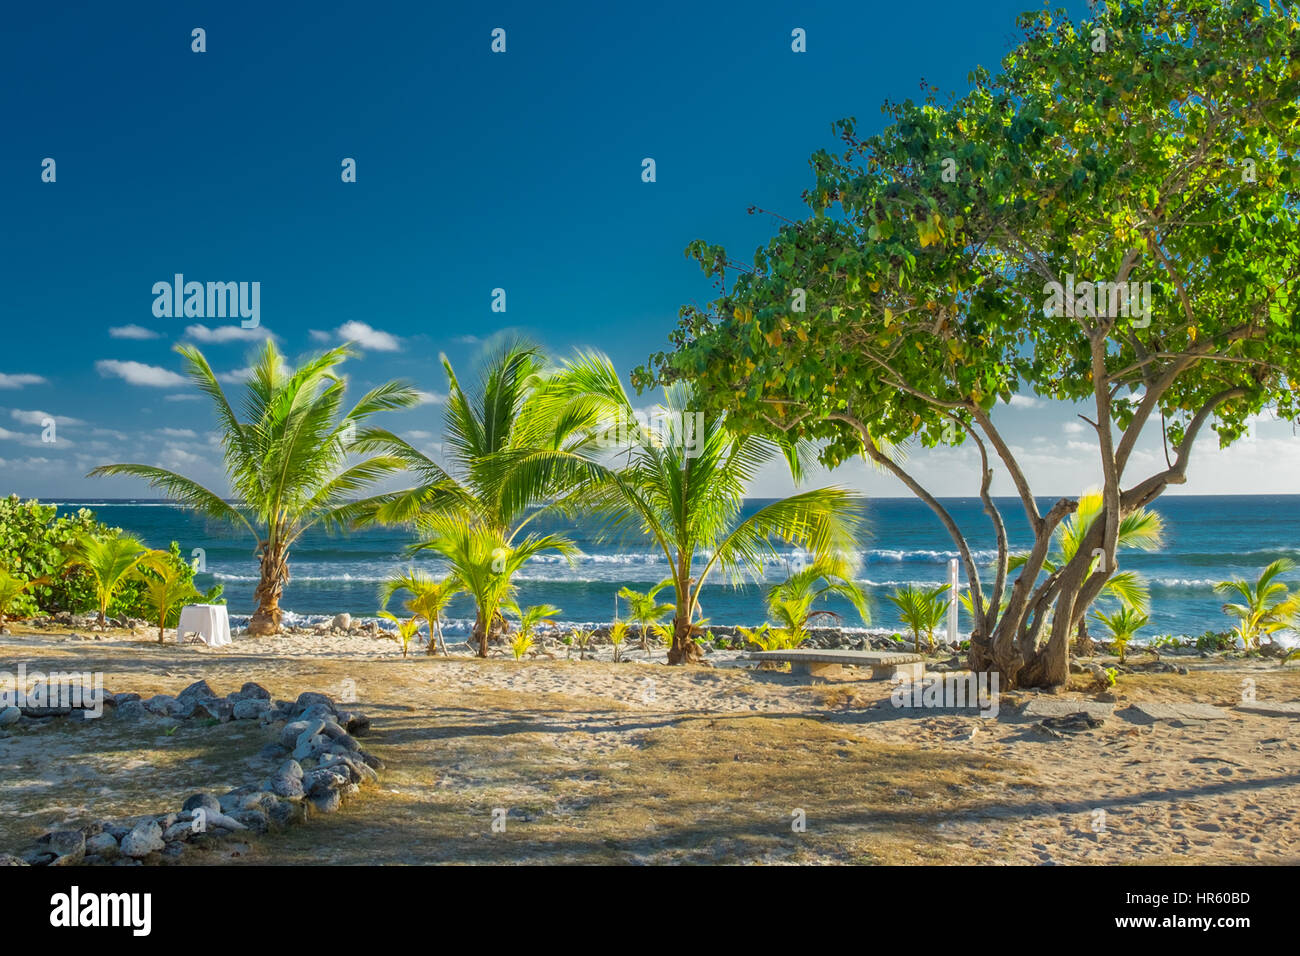 Gemeinschaft Strand in der Karibik einer der Ort beliebt bei Surfern, Grand Cayman, Cayman-Inseln Stockfoto